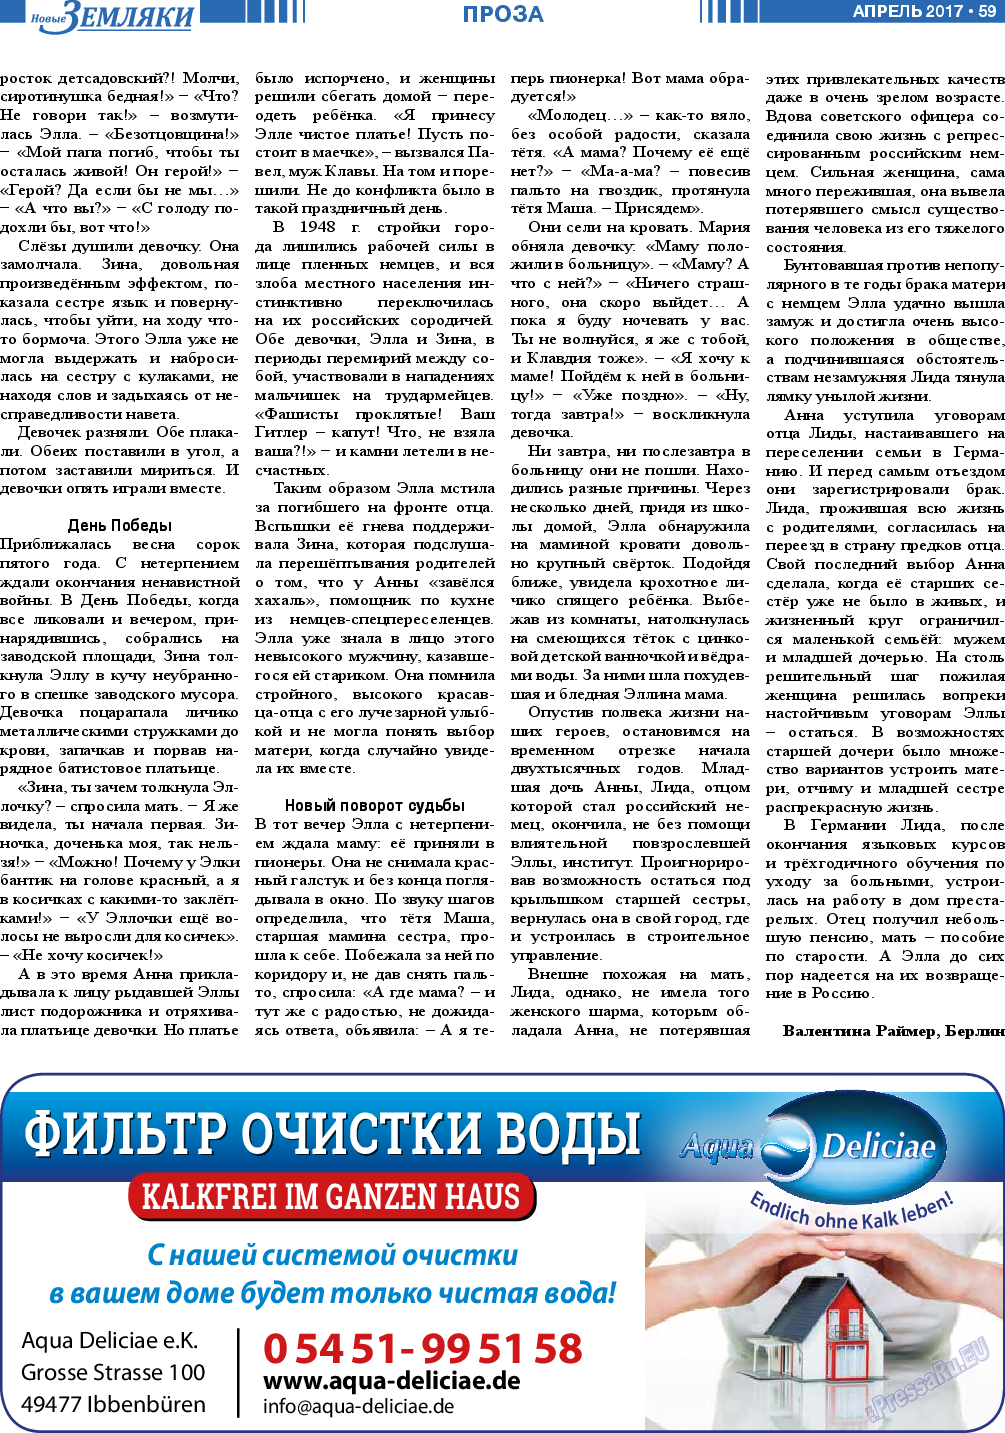 Новые Земляки (газета). 2017 год, номер 4, стр. 59